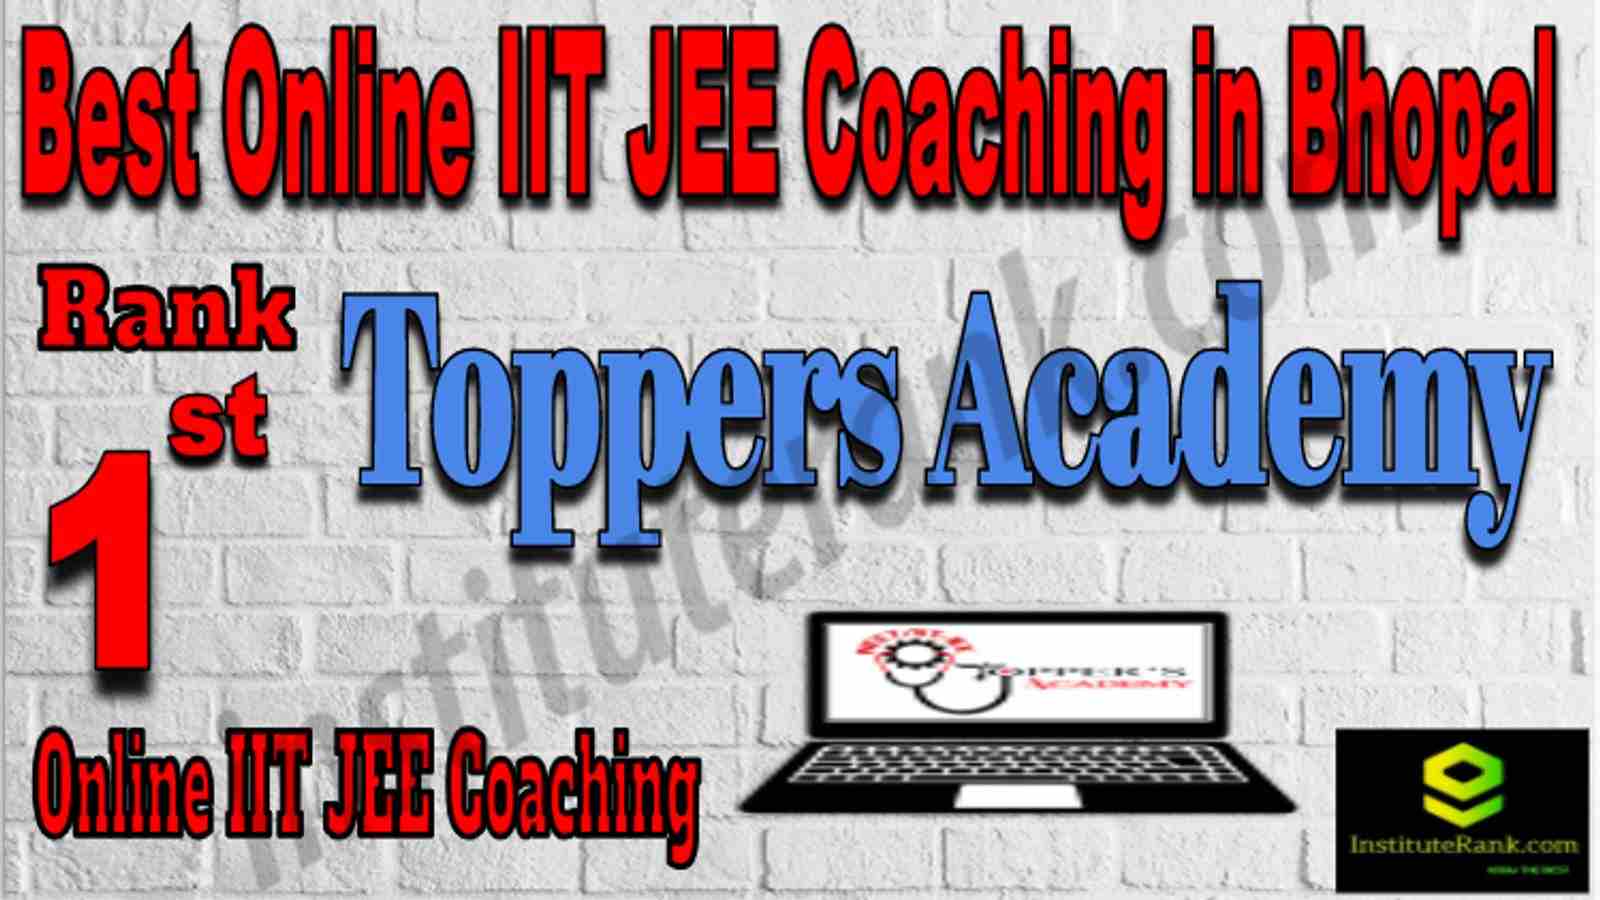 Rank 1 Best Online IIT JEE Coaching in Bhopal